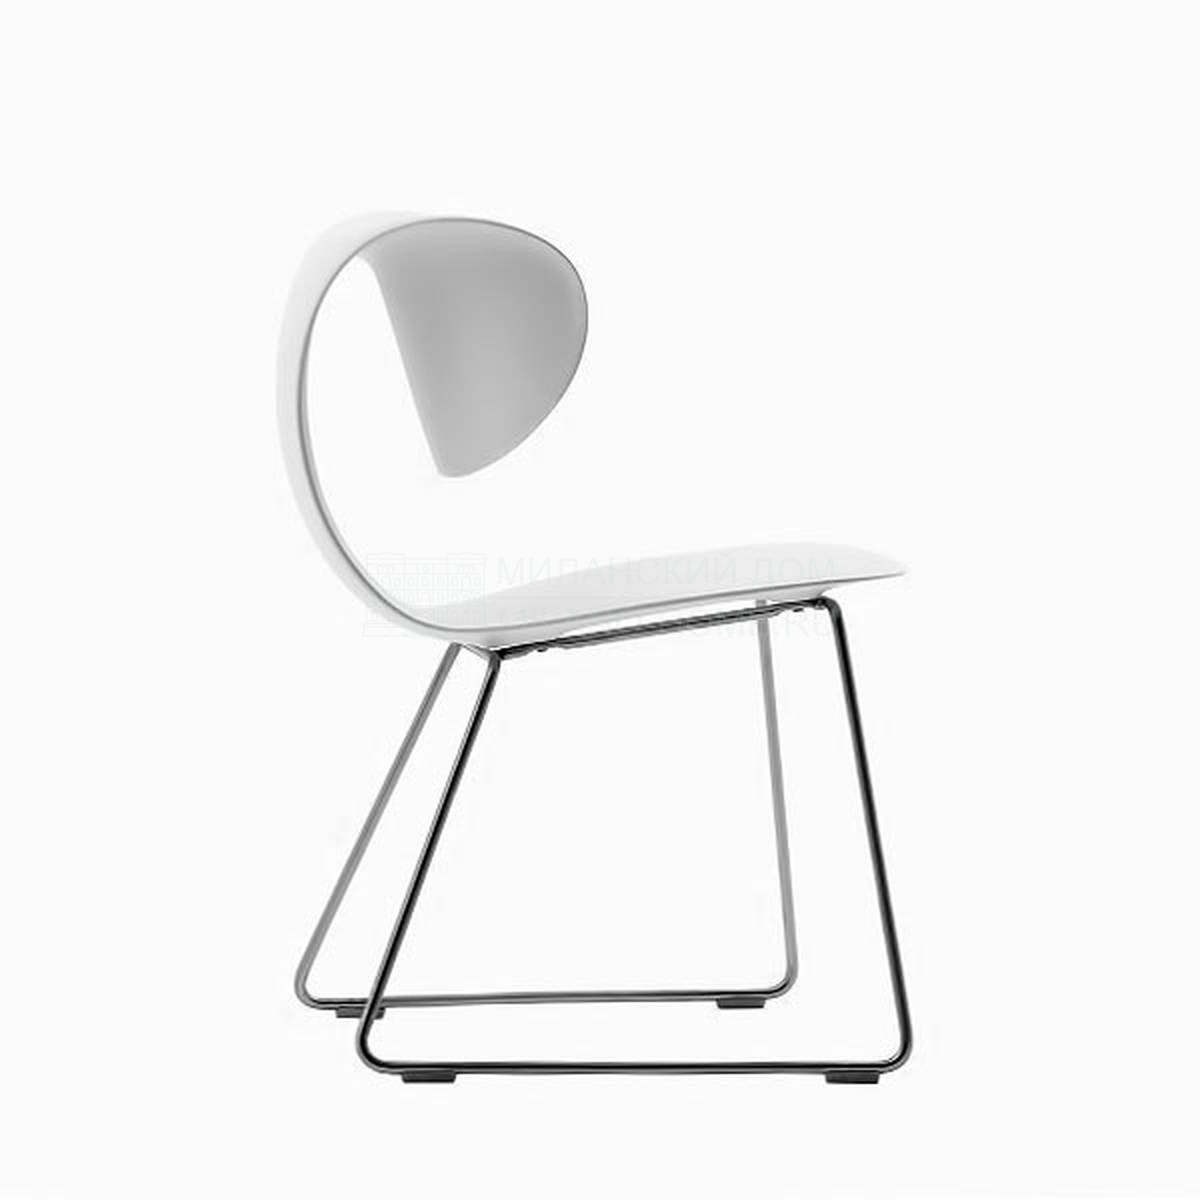 Стул Maxima Chair из Италии фабрики SAWAYA & MORONI